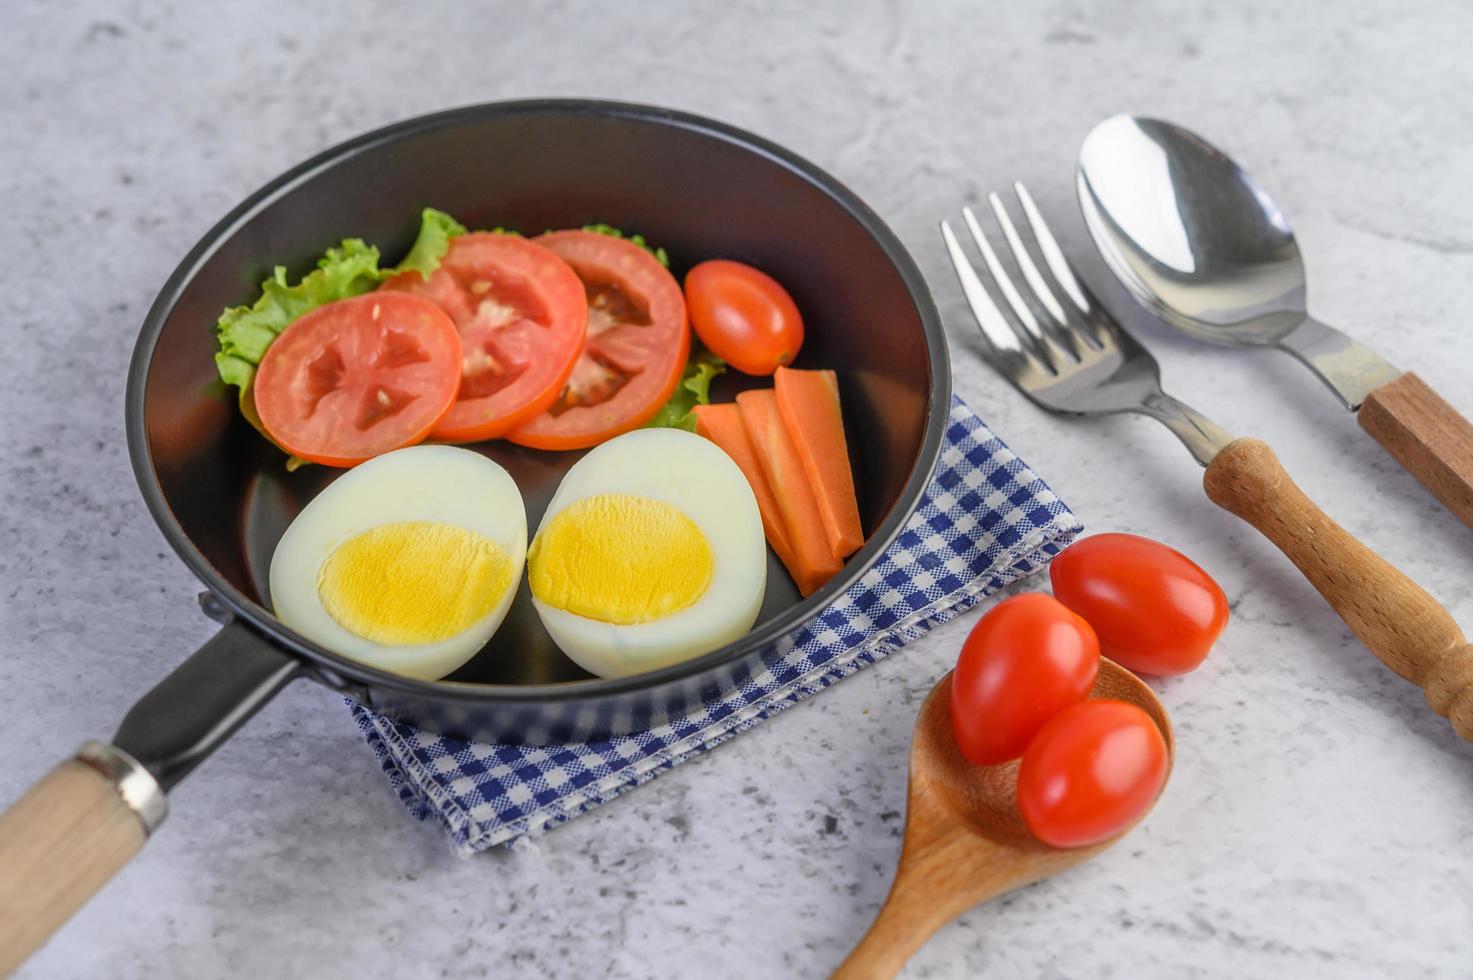 œufs durs, carottes et tomates dans une casserole avec des tomates photo